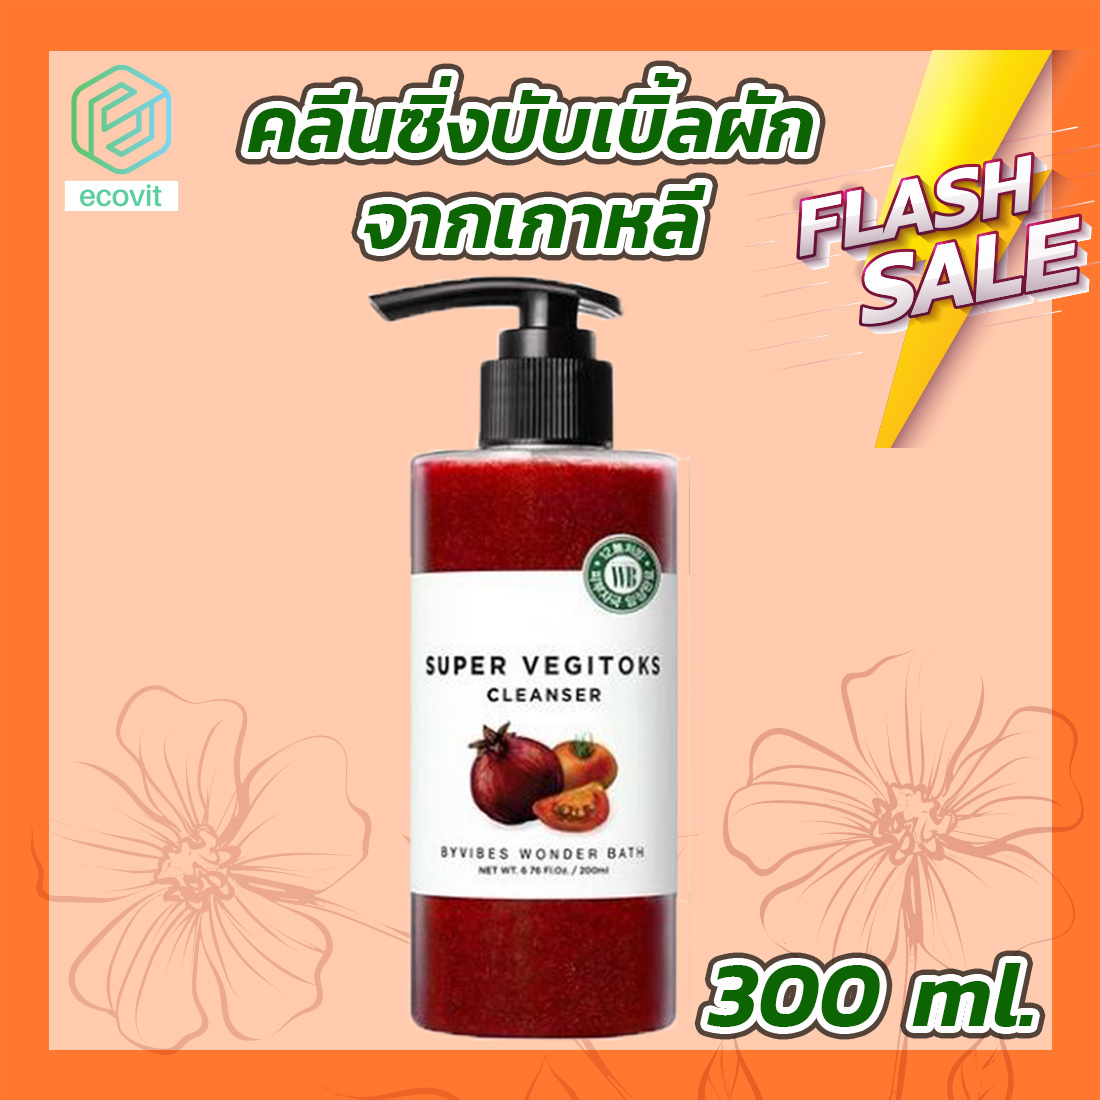 คลีนซิ่งผัก Wonder Bath Super Vegitoks Cleanser [สีแดง][1 ขวด][300 ml.] คลีนซิ่งผักแท้ Ecovit